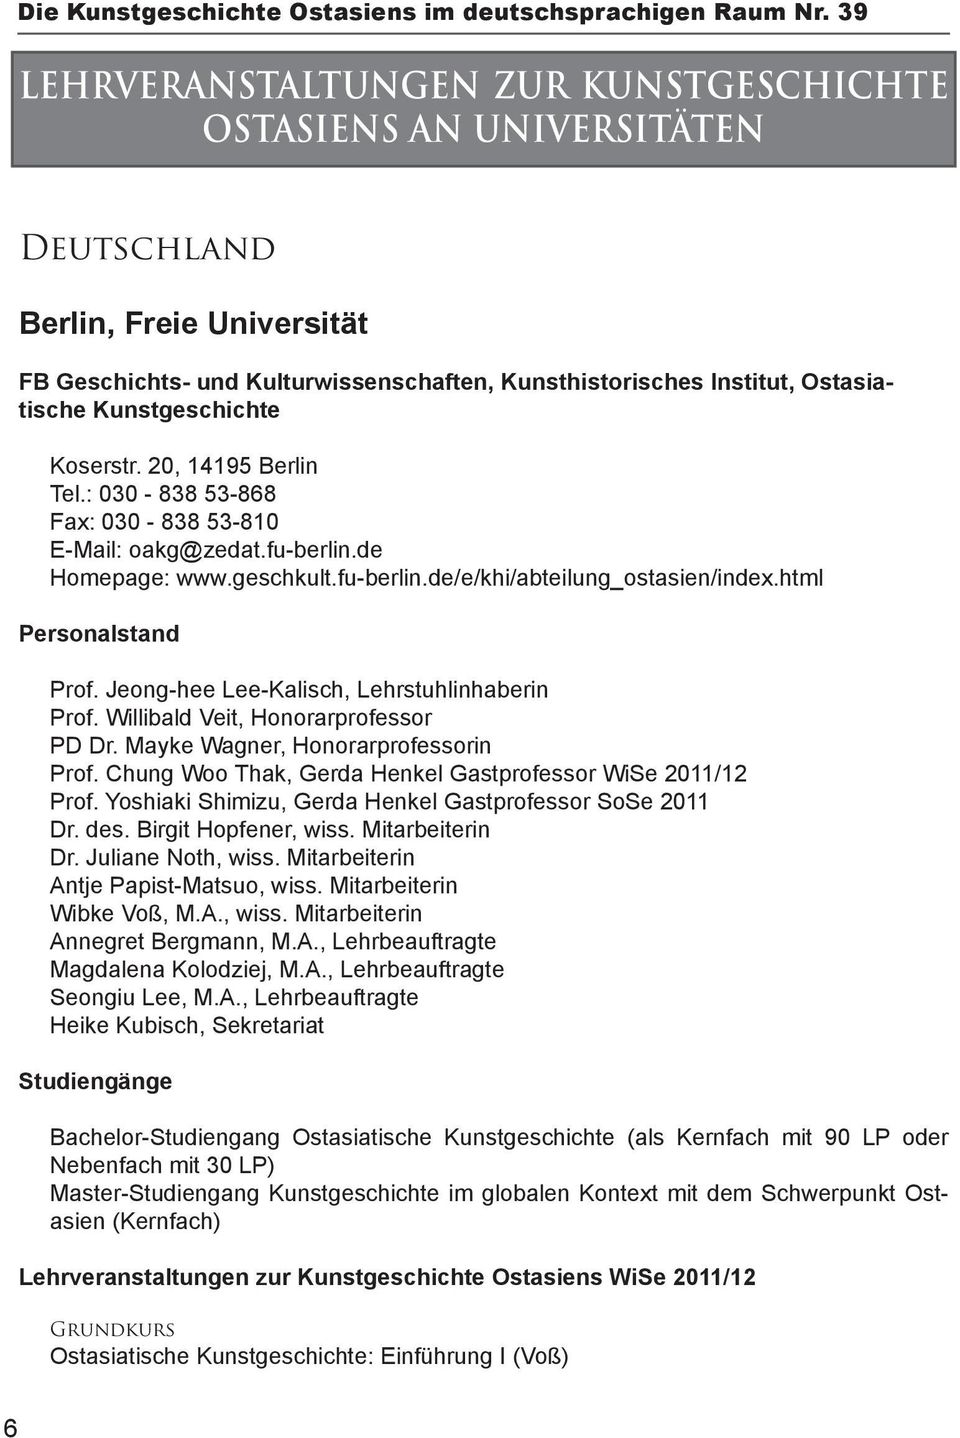 Kunstgeschichte Koserstr. 20, 14195 Berlin Tel.: 030-838 53-868 Fax: 030-838 53-810 E-Mail: oakg@zedat.fu-berlin.de Homepage: www.geschkult.fu-berlin.de/e/khi/abteilung_ostasien/index.